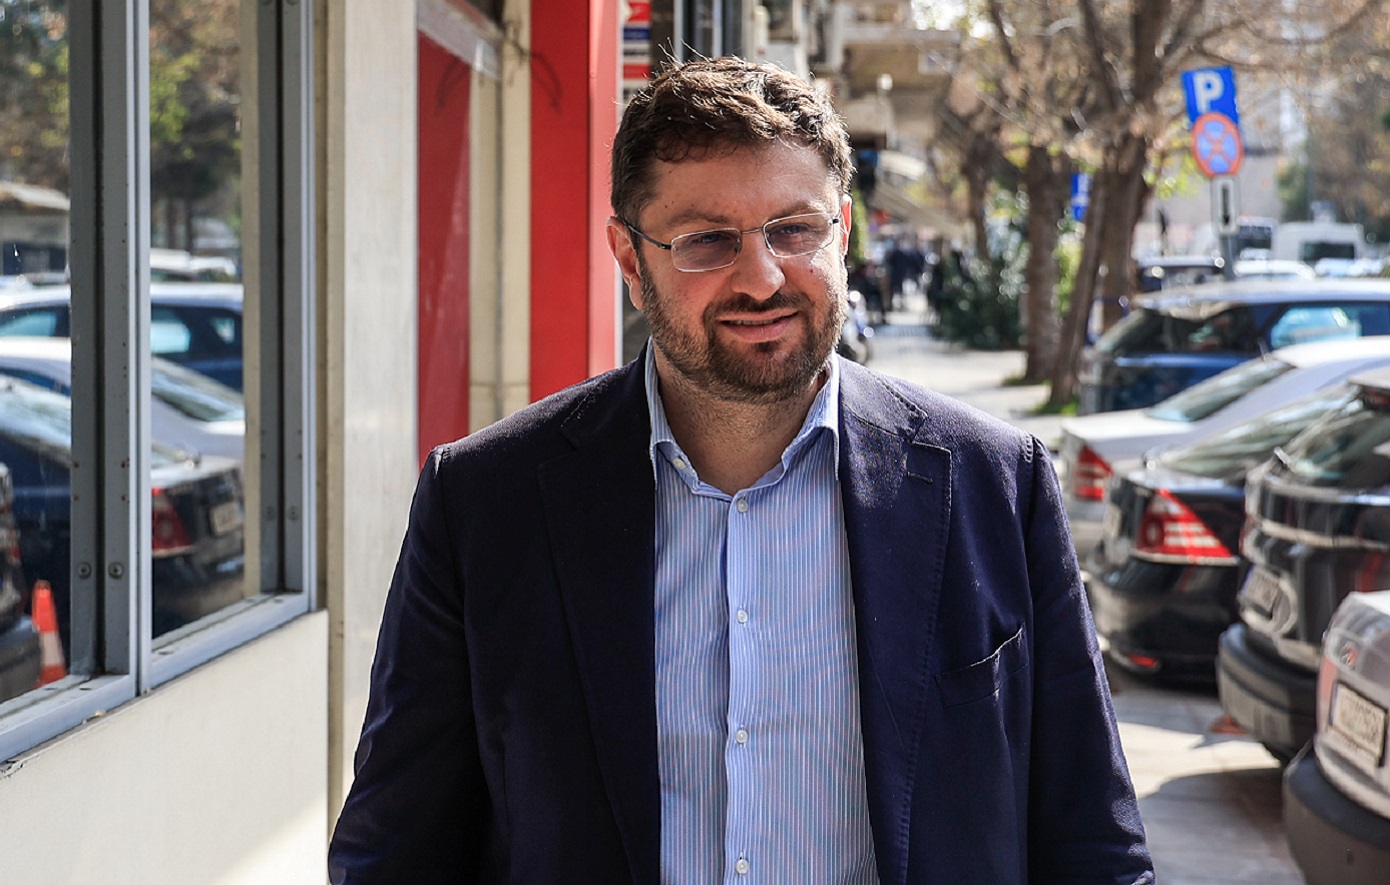 Ξεσπά ο Ζαχαριάδης κατά υποστηρικτών του Κασσελάκη: Καθαρή η επιχειρηματολογία και η ατζέντα του Μητσοτάκη και της Ζωής